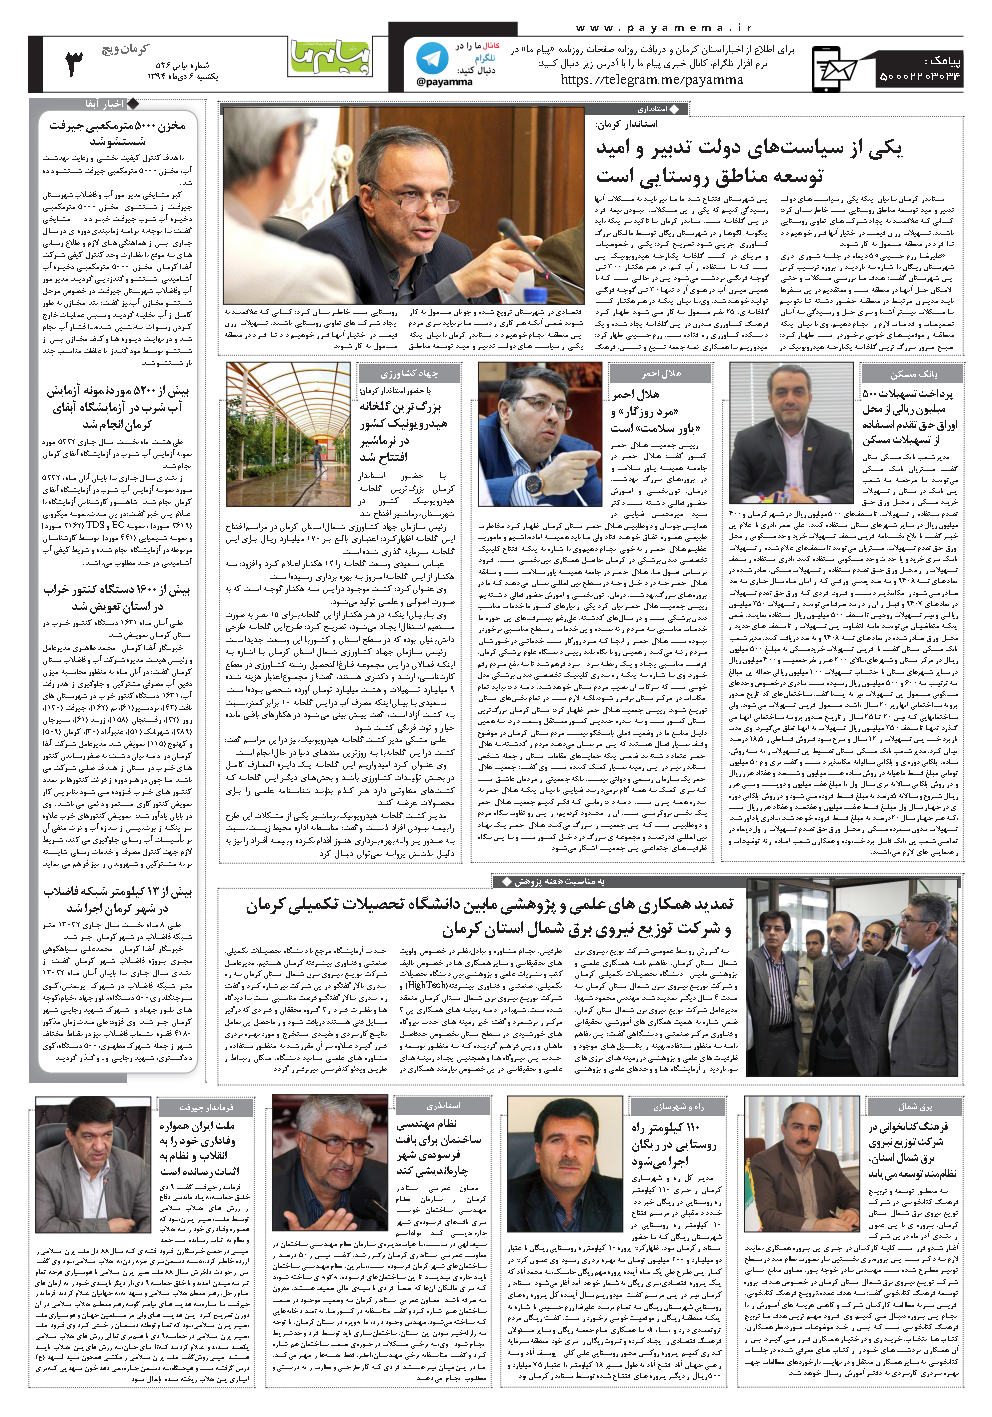 صفحه کرمان ویچ شماره 526 روزنامه پیام ما